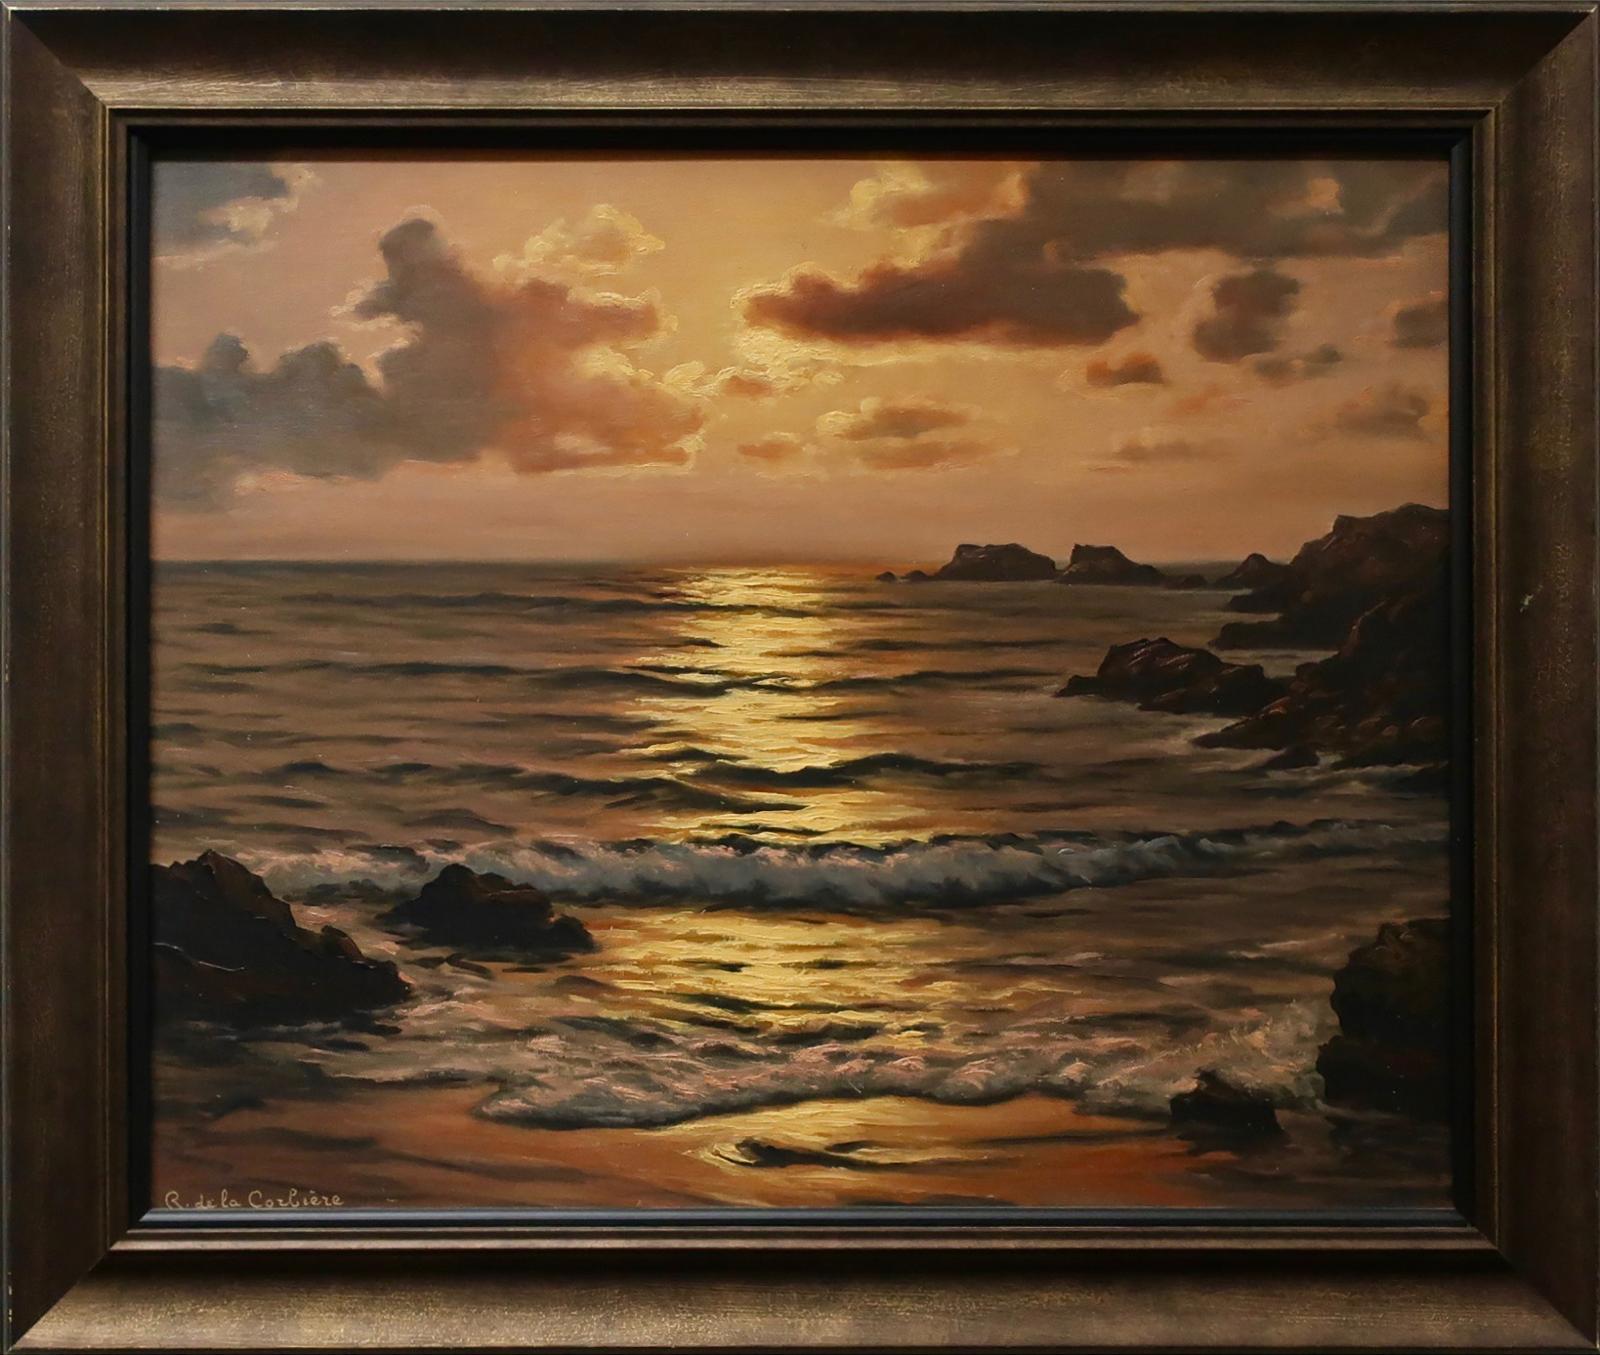 Roger de la Corbiere (1893-1974) - Seascape At Sunset